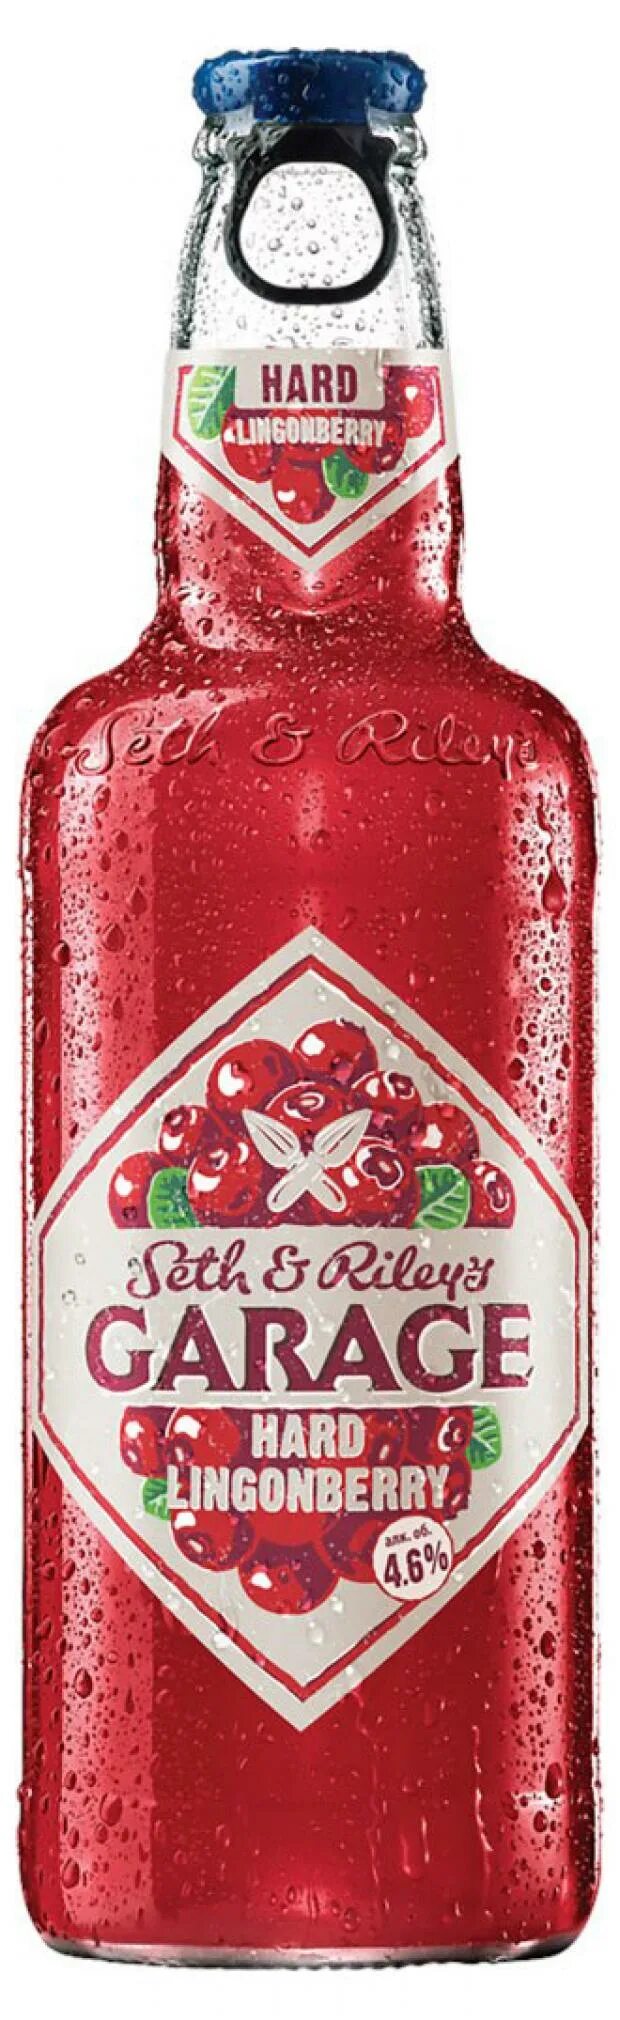 Пивной напиток сет энд Райлис гараж. Пивной напиток Garage Seth & Riley’s Lingonberry 0.44 л. Сет энд Райлис гараж Хард 0,44л. Напиток "сет энд Райлис гараж Хард брусника. Seth riley garage